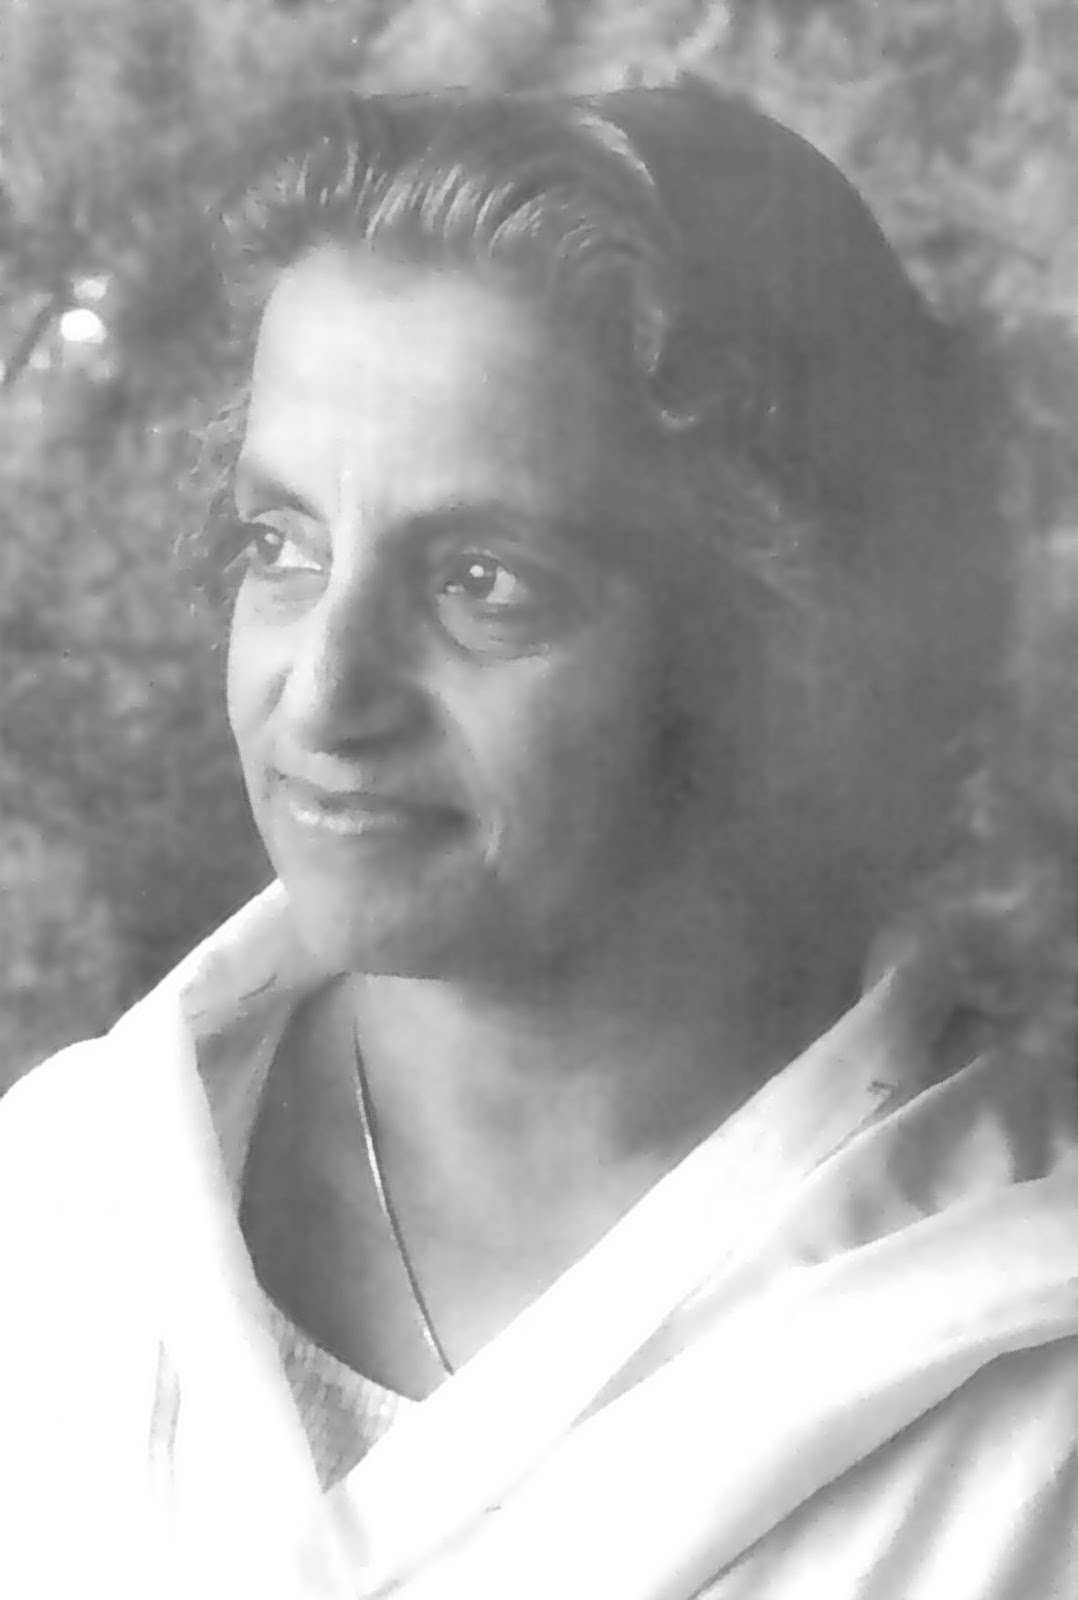 Profile: Vimala Thakar